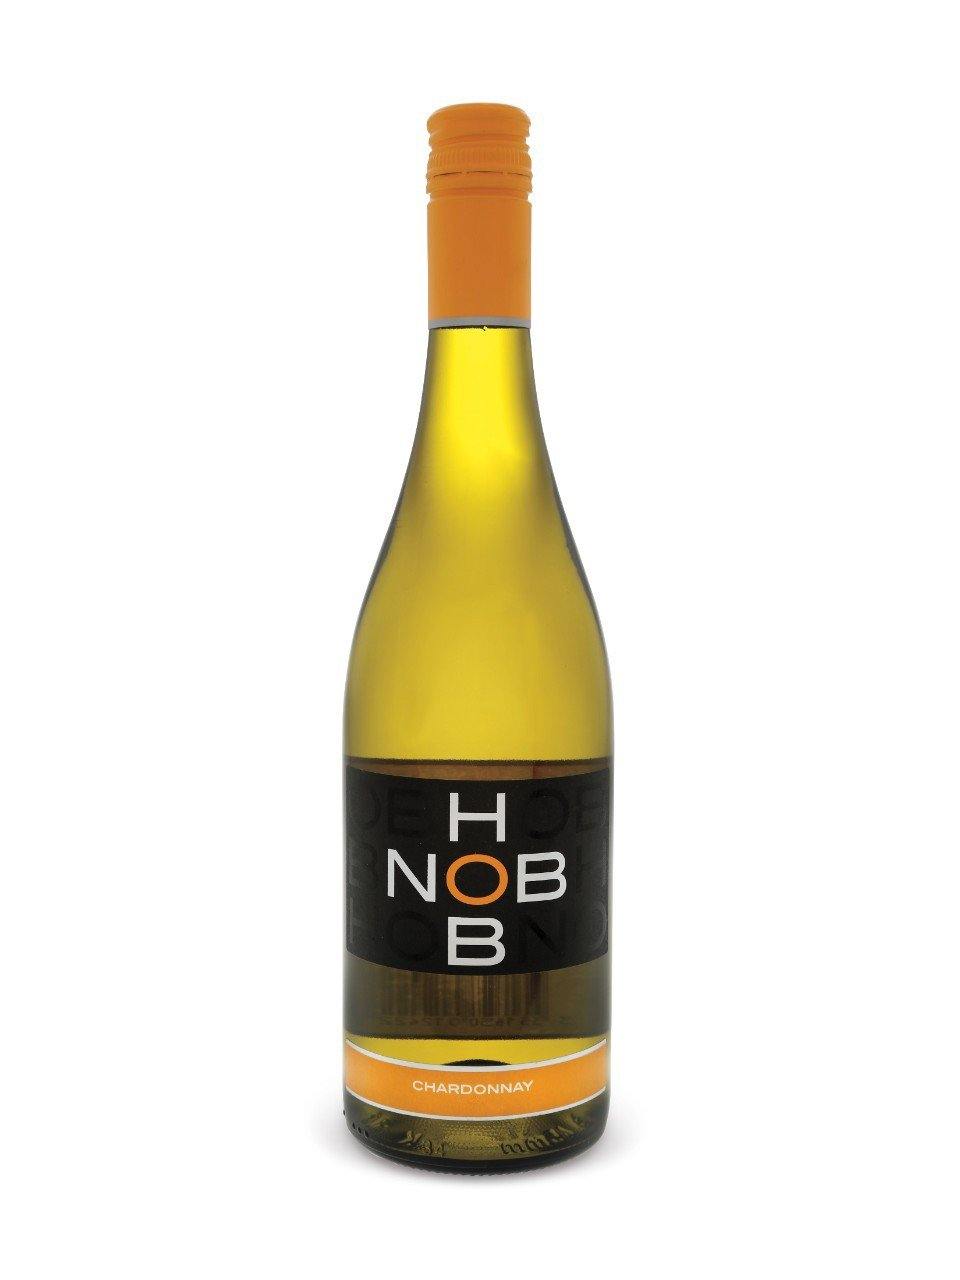 Hob Nob Chardonnay Pays d'Oc 750 mL bottle - Speedy Booze